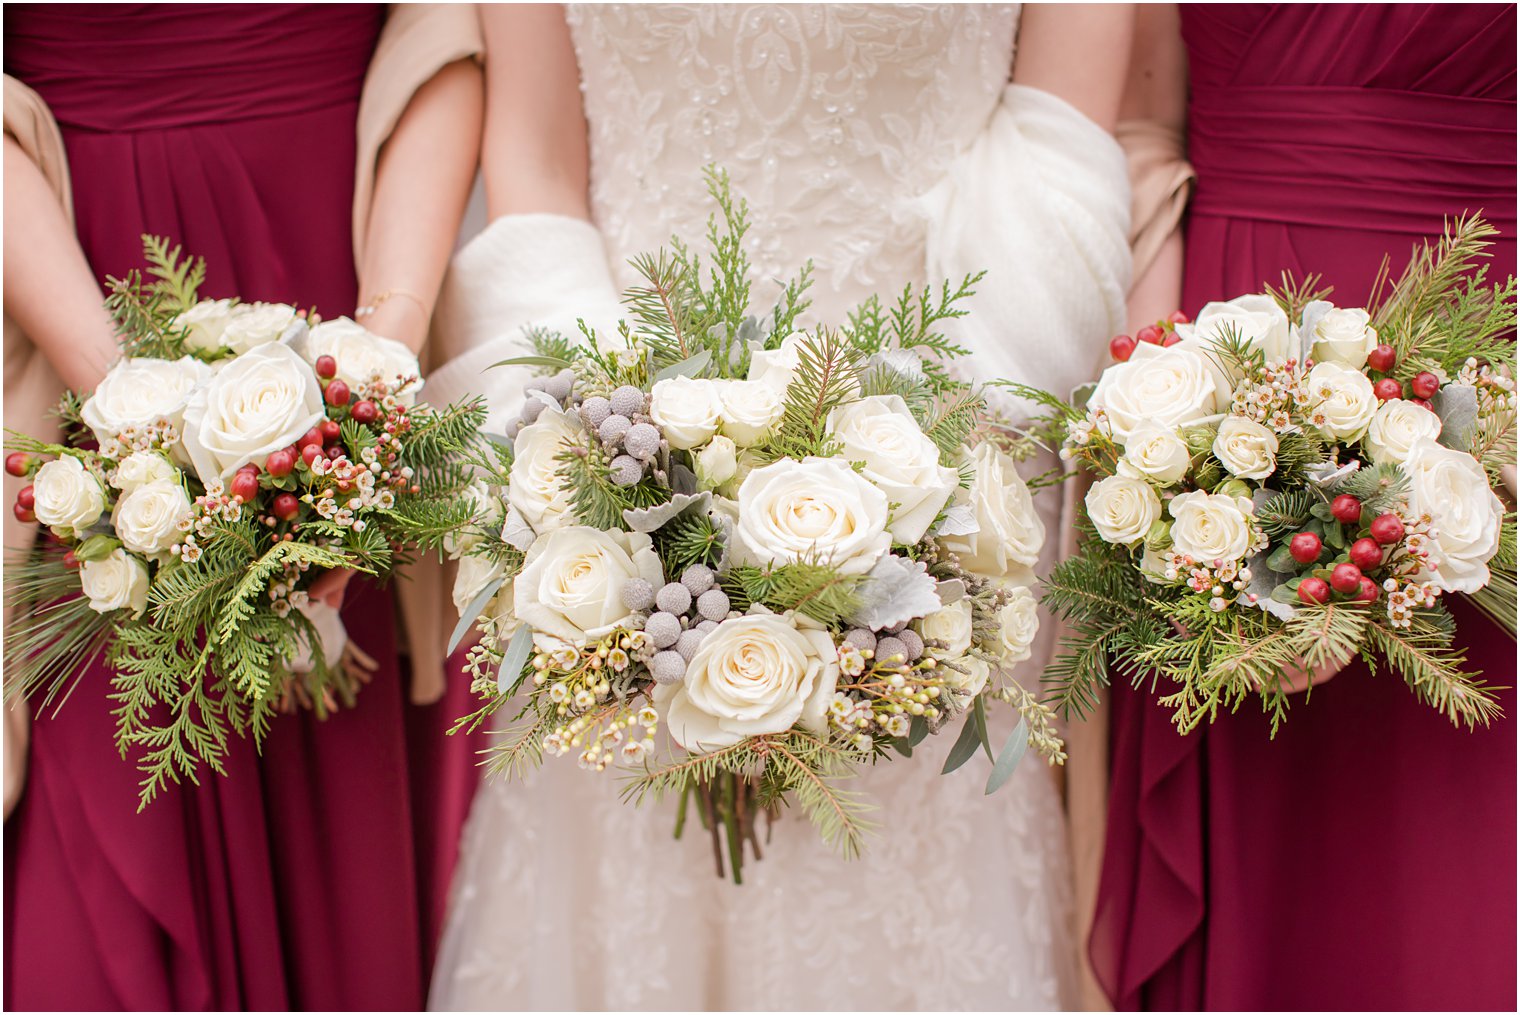 Winter wedding florals by Martinsville Florist